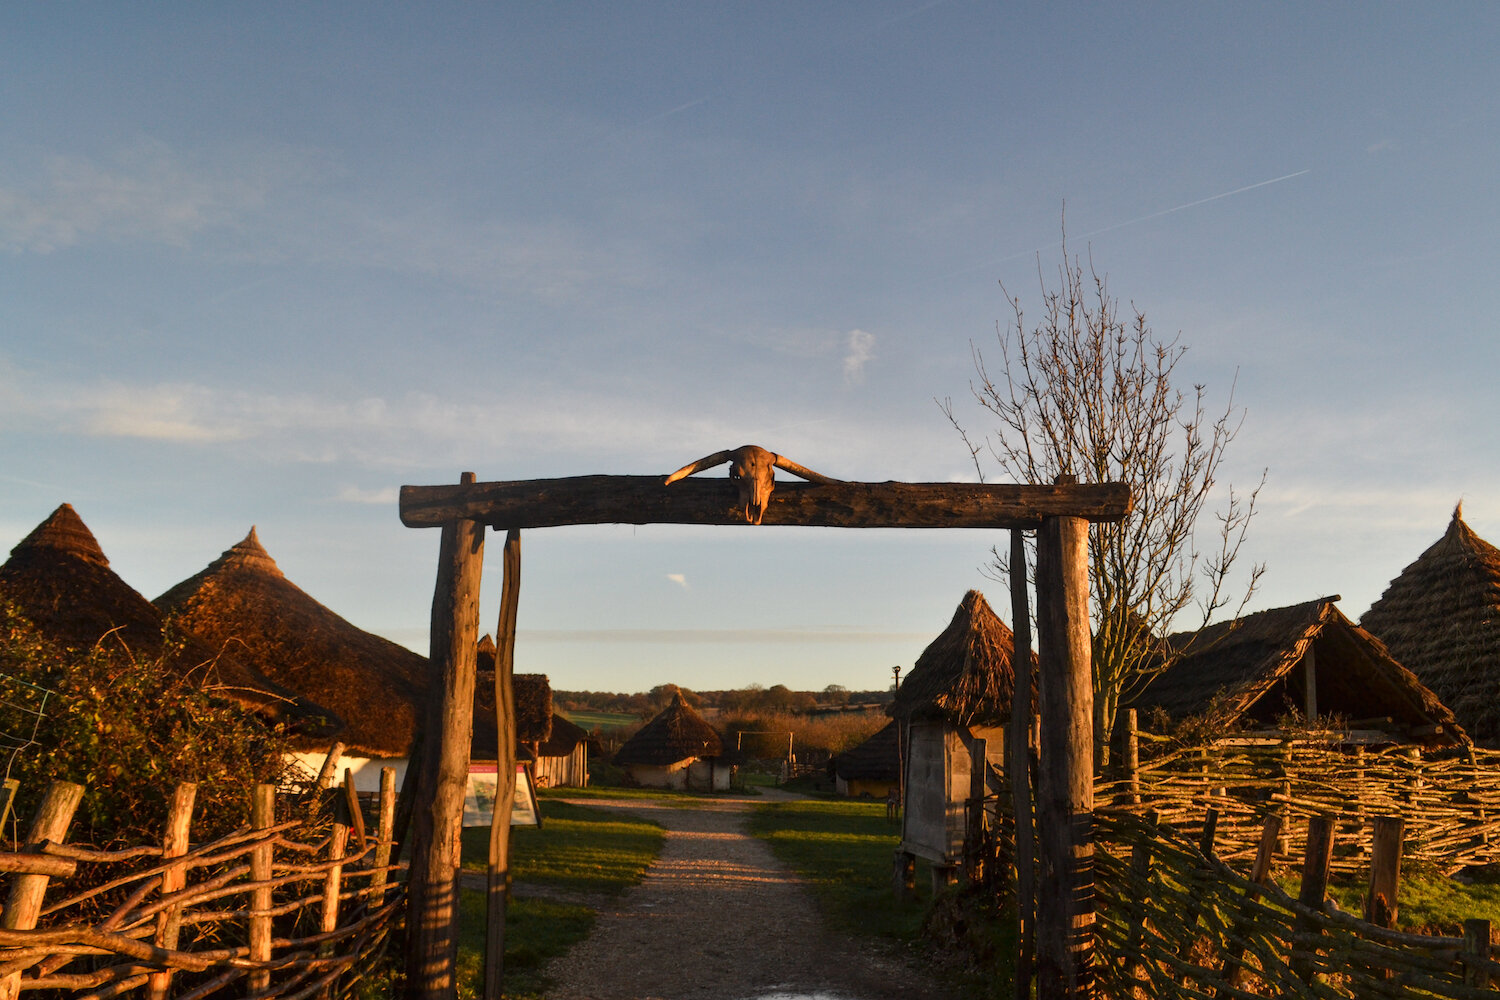 Butser Ancient Farm Iron Age Roundhouse enclosure gateway entrance